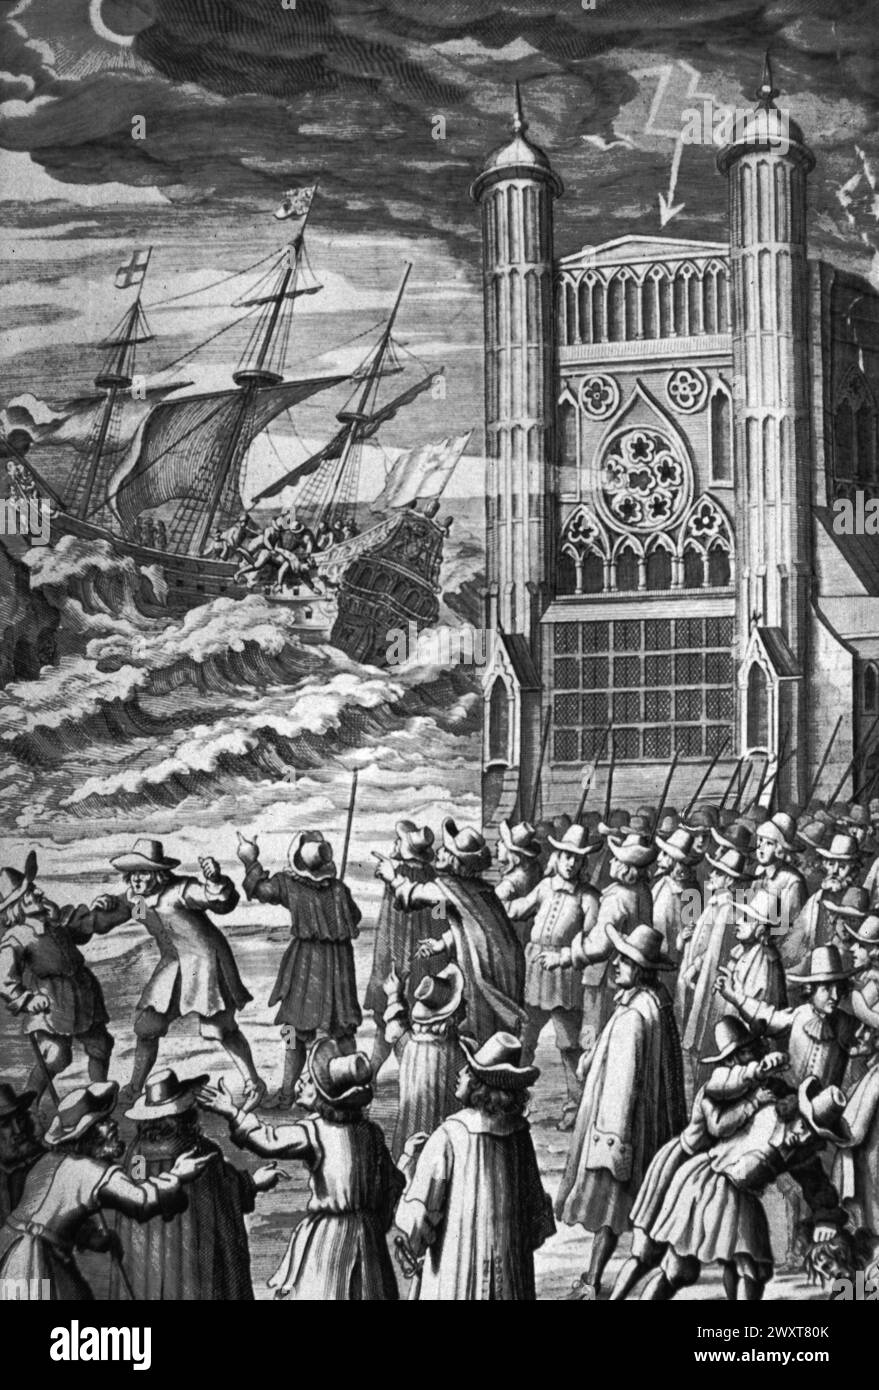 Allegorische Darstellung des Chaos, das aus der Hinrichtung von König Karl I. resultierte, Illustration, England 17. Jahrhundert Stockfoto